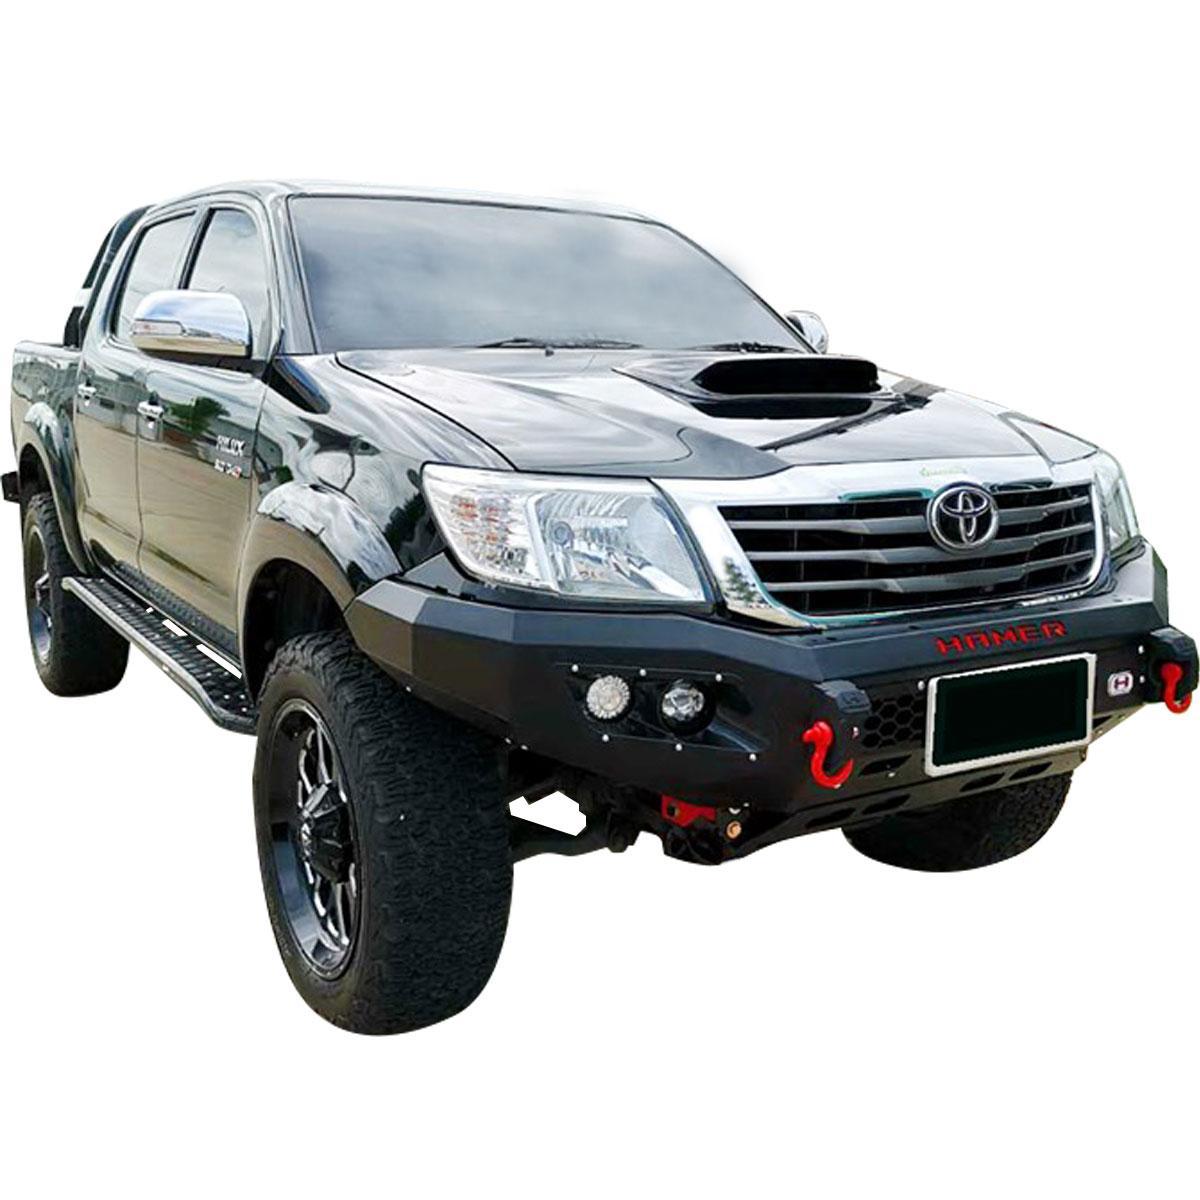 Toyota Hilux Offroad Zubehör: Seilwinde, Unterfahrschutz, Dachträger,  Fahrwerk